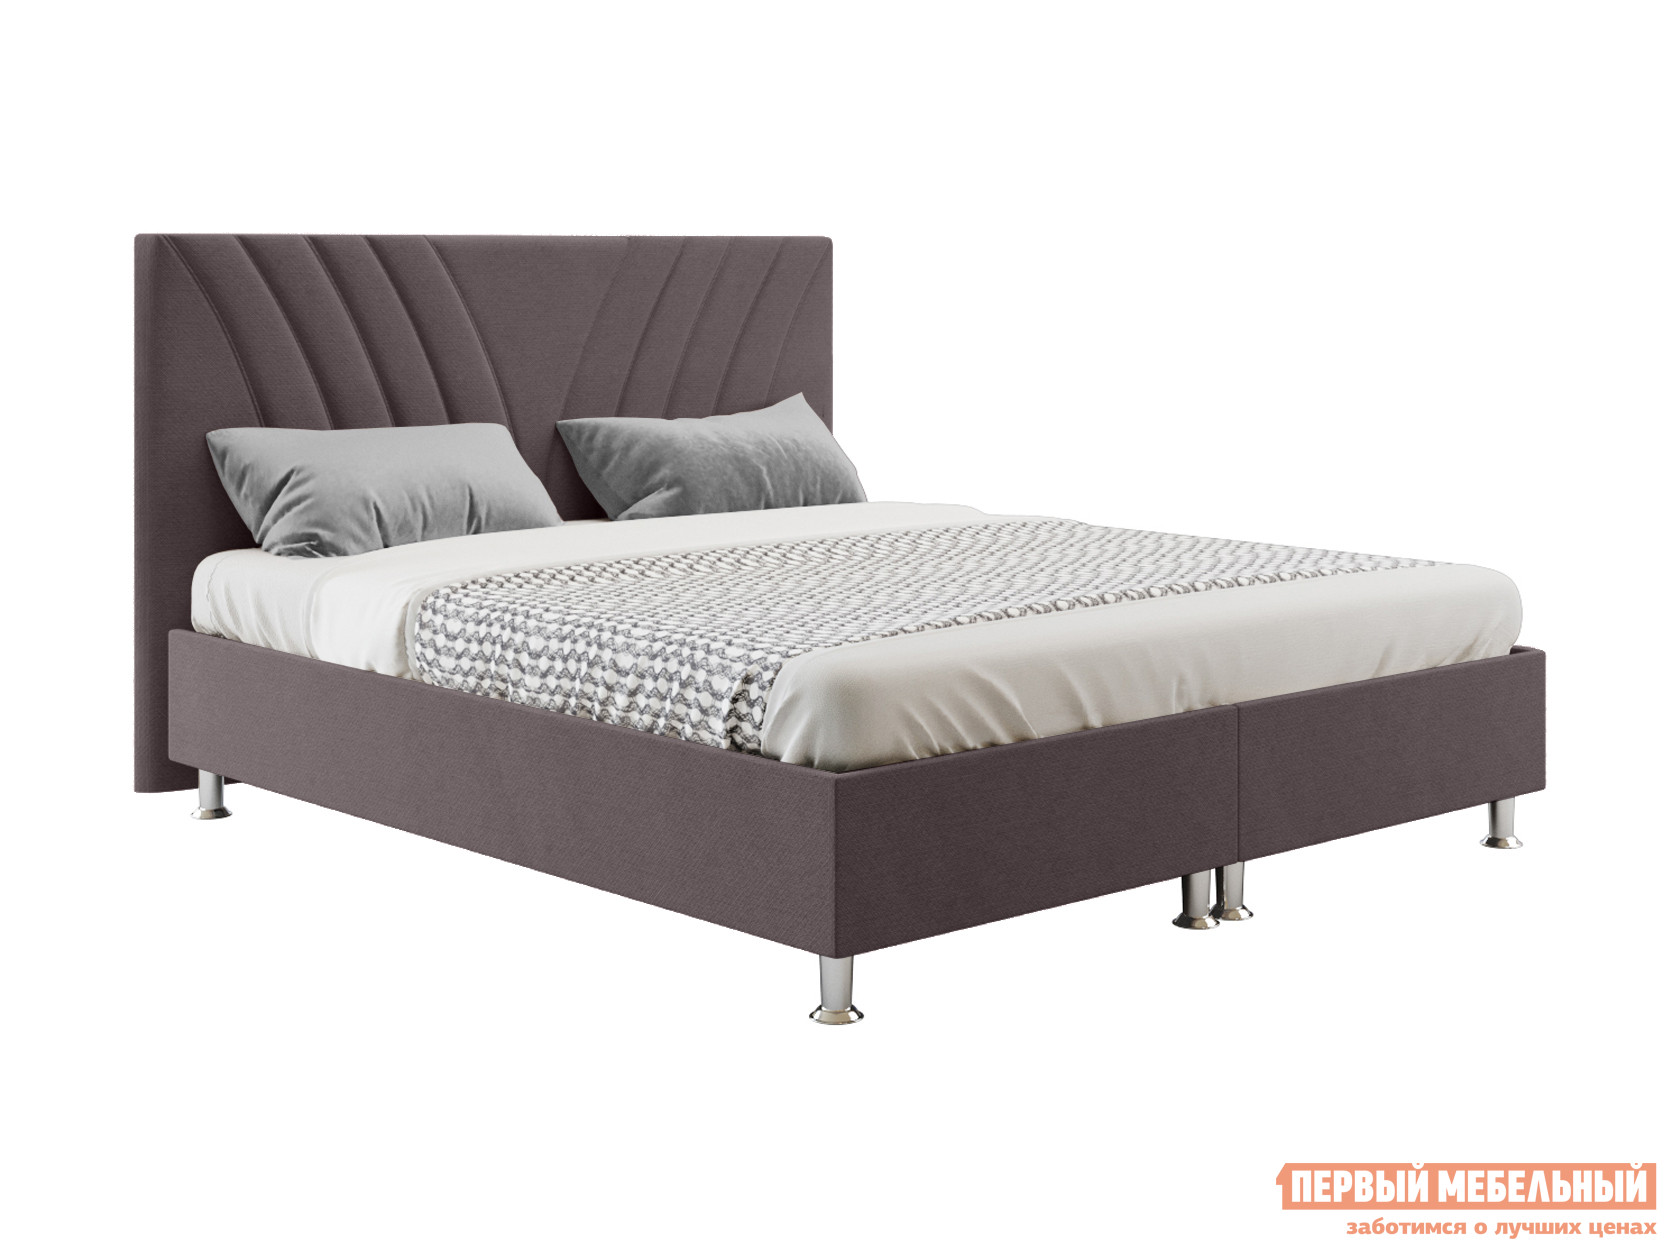 Двуспальная кровать  Кровать Версо с подъемным механизмом 140х200, 160х200, 180х200, 200х200 Темно-серый, 140х200 см